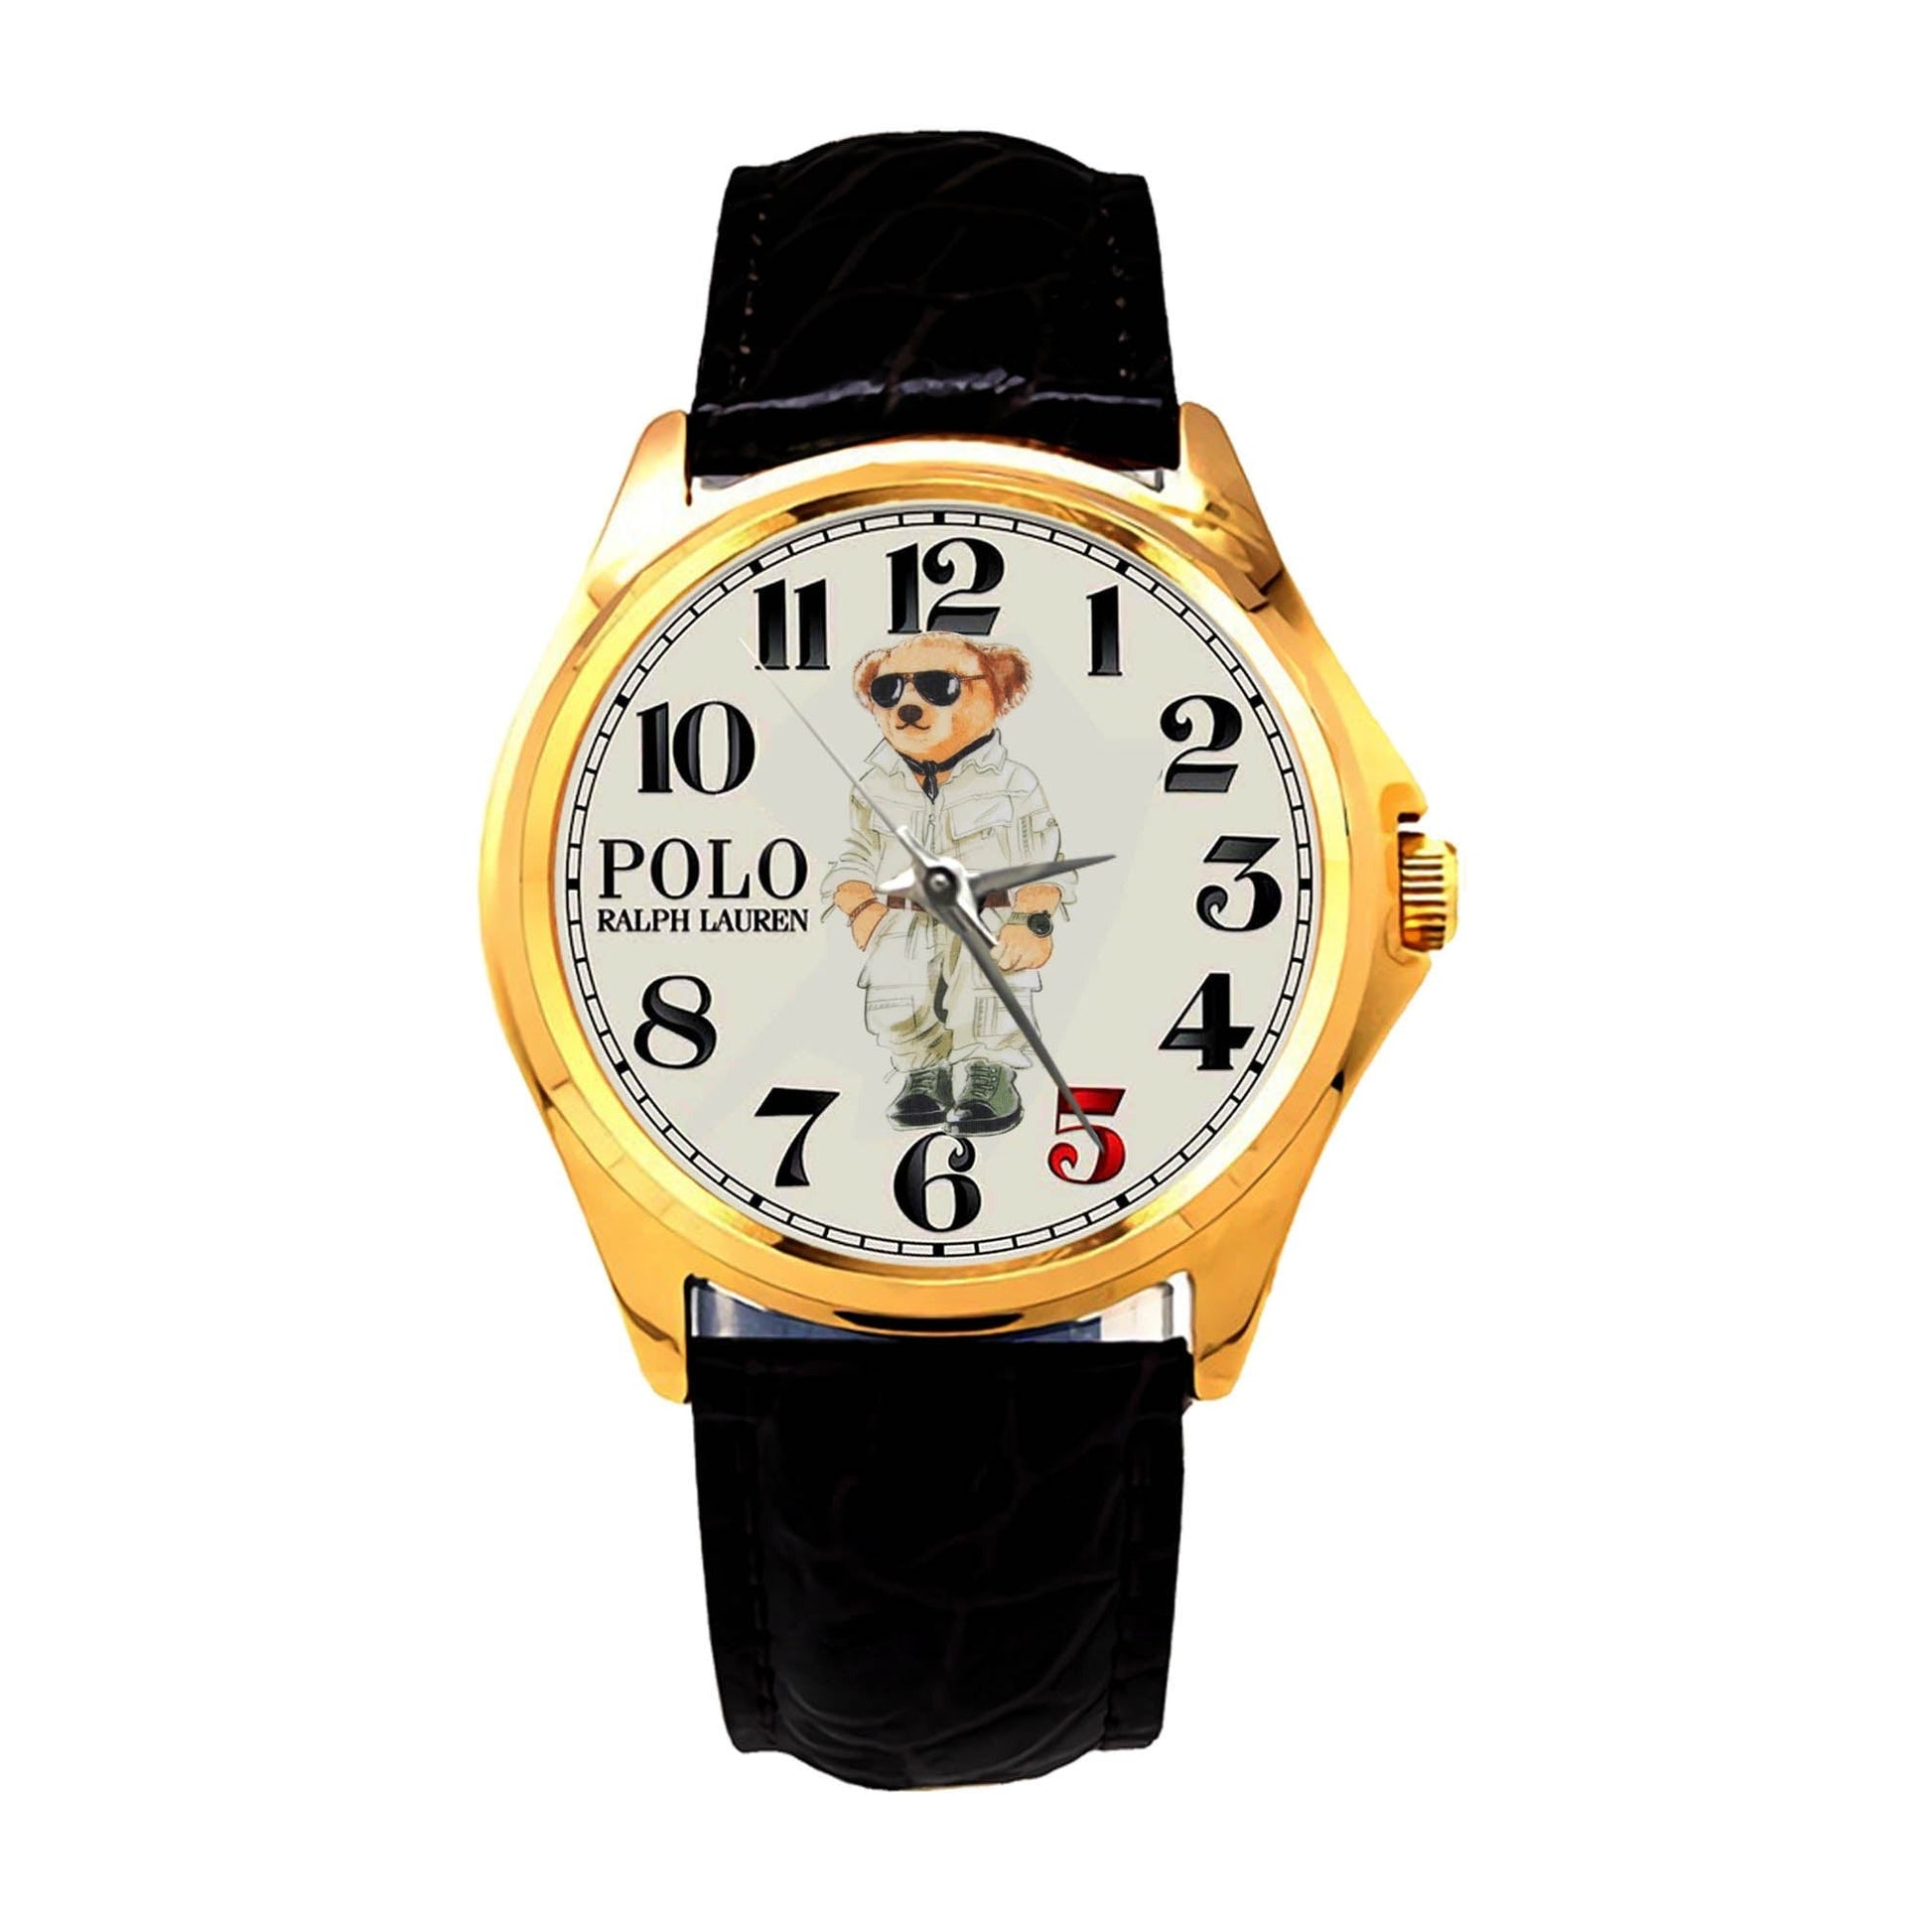 Ralph Lauren's Polo Bear Watches KP614